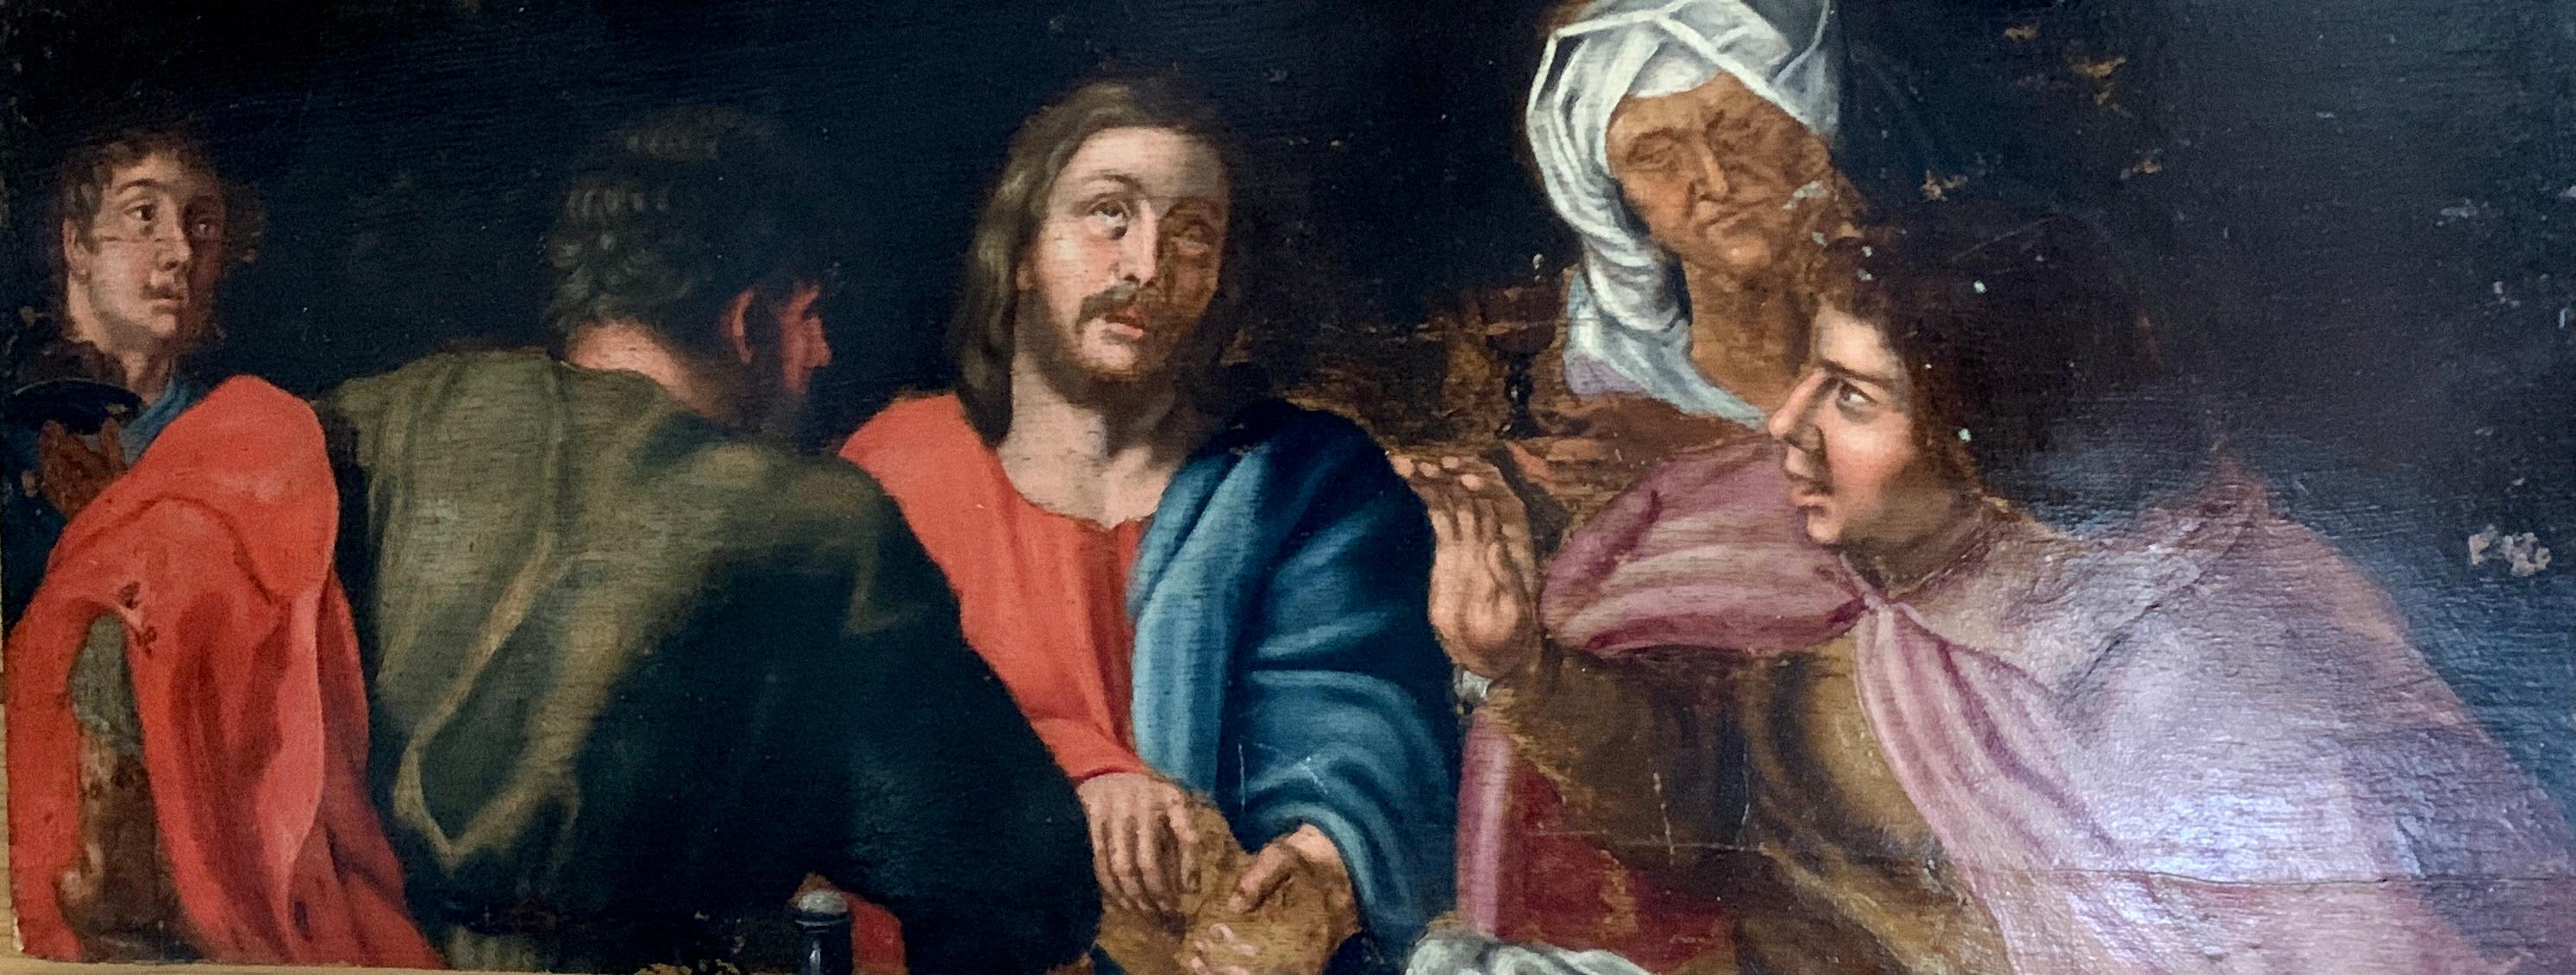 Huile européenne du XVIIe siècle, le Christ et ses disciples assis autour d'une table.